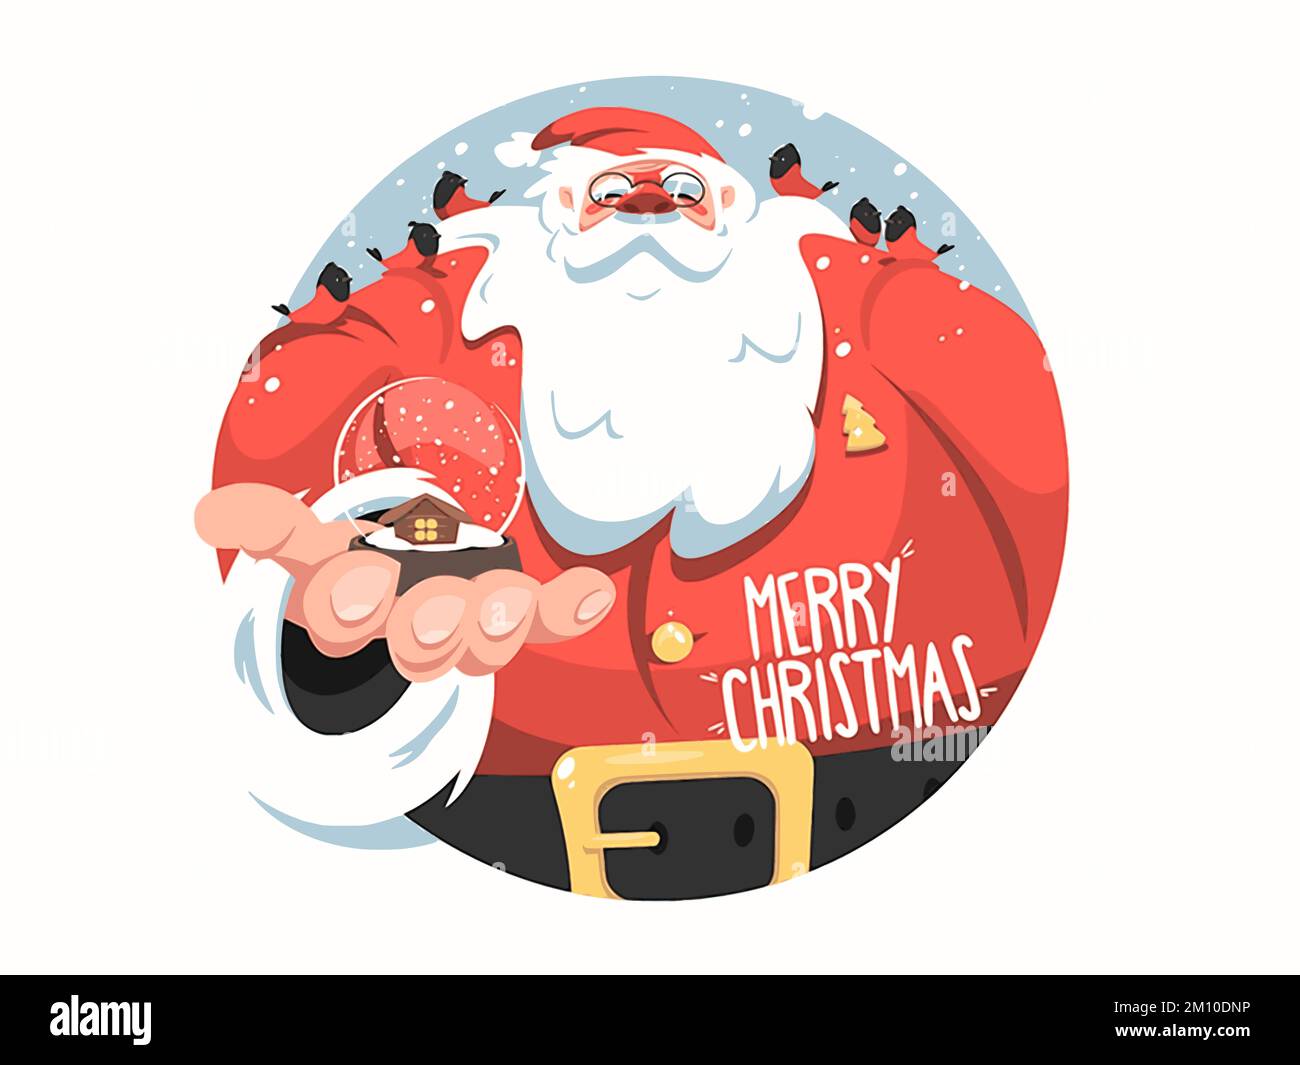 Drôle Père Noël joyeux Noël arbre joyeux Noël bonne fête de l'an cadeau Noël  carte postale Noël illustration du site Web Photo Stock - Alamy